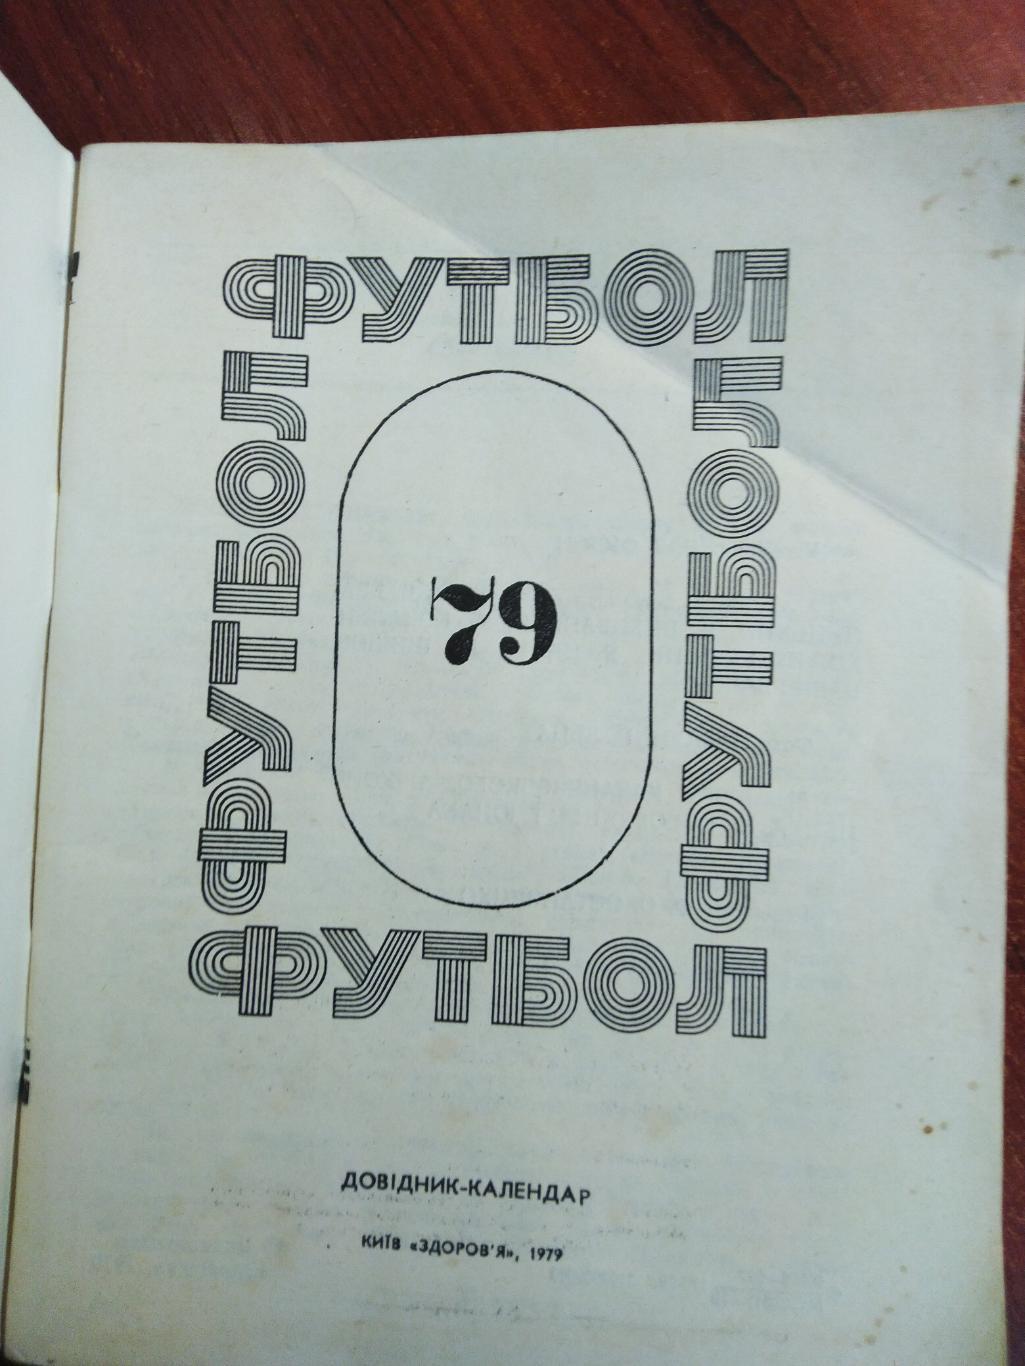 Справочник-календарь Футбол 1979 Киев 1